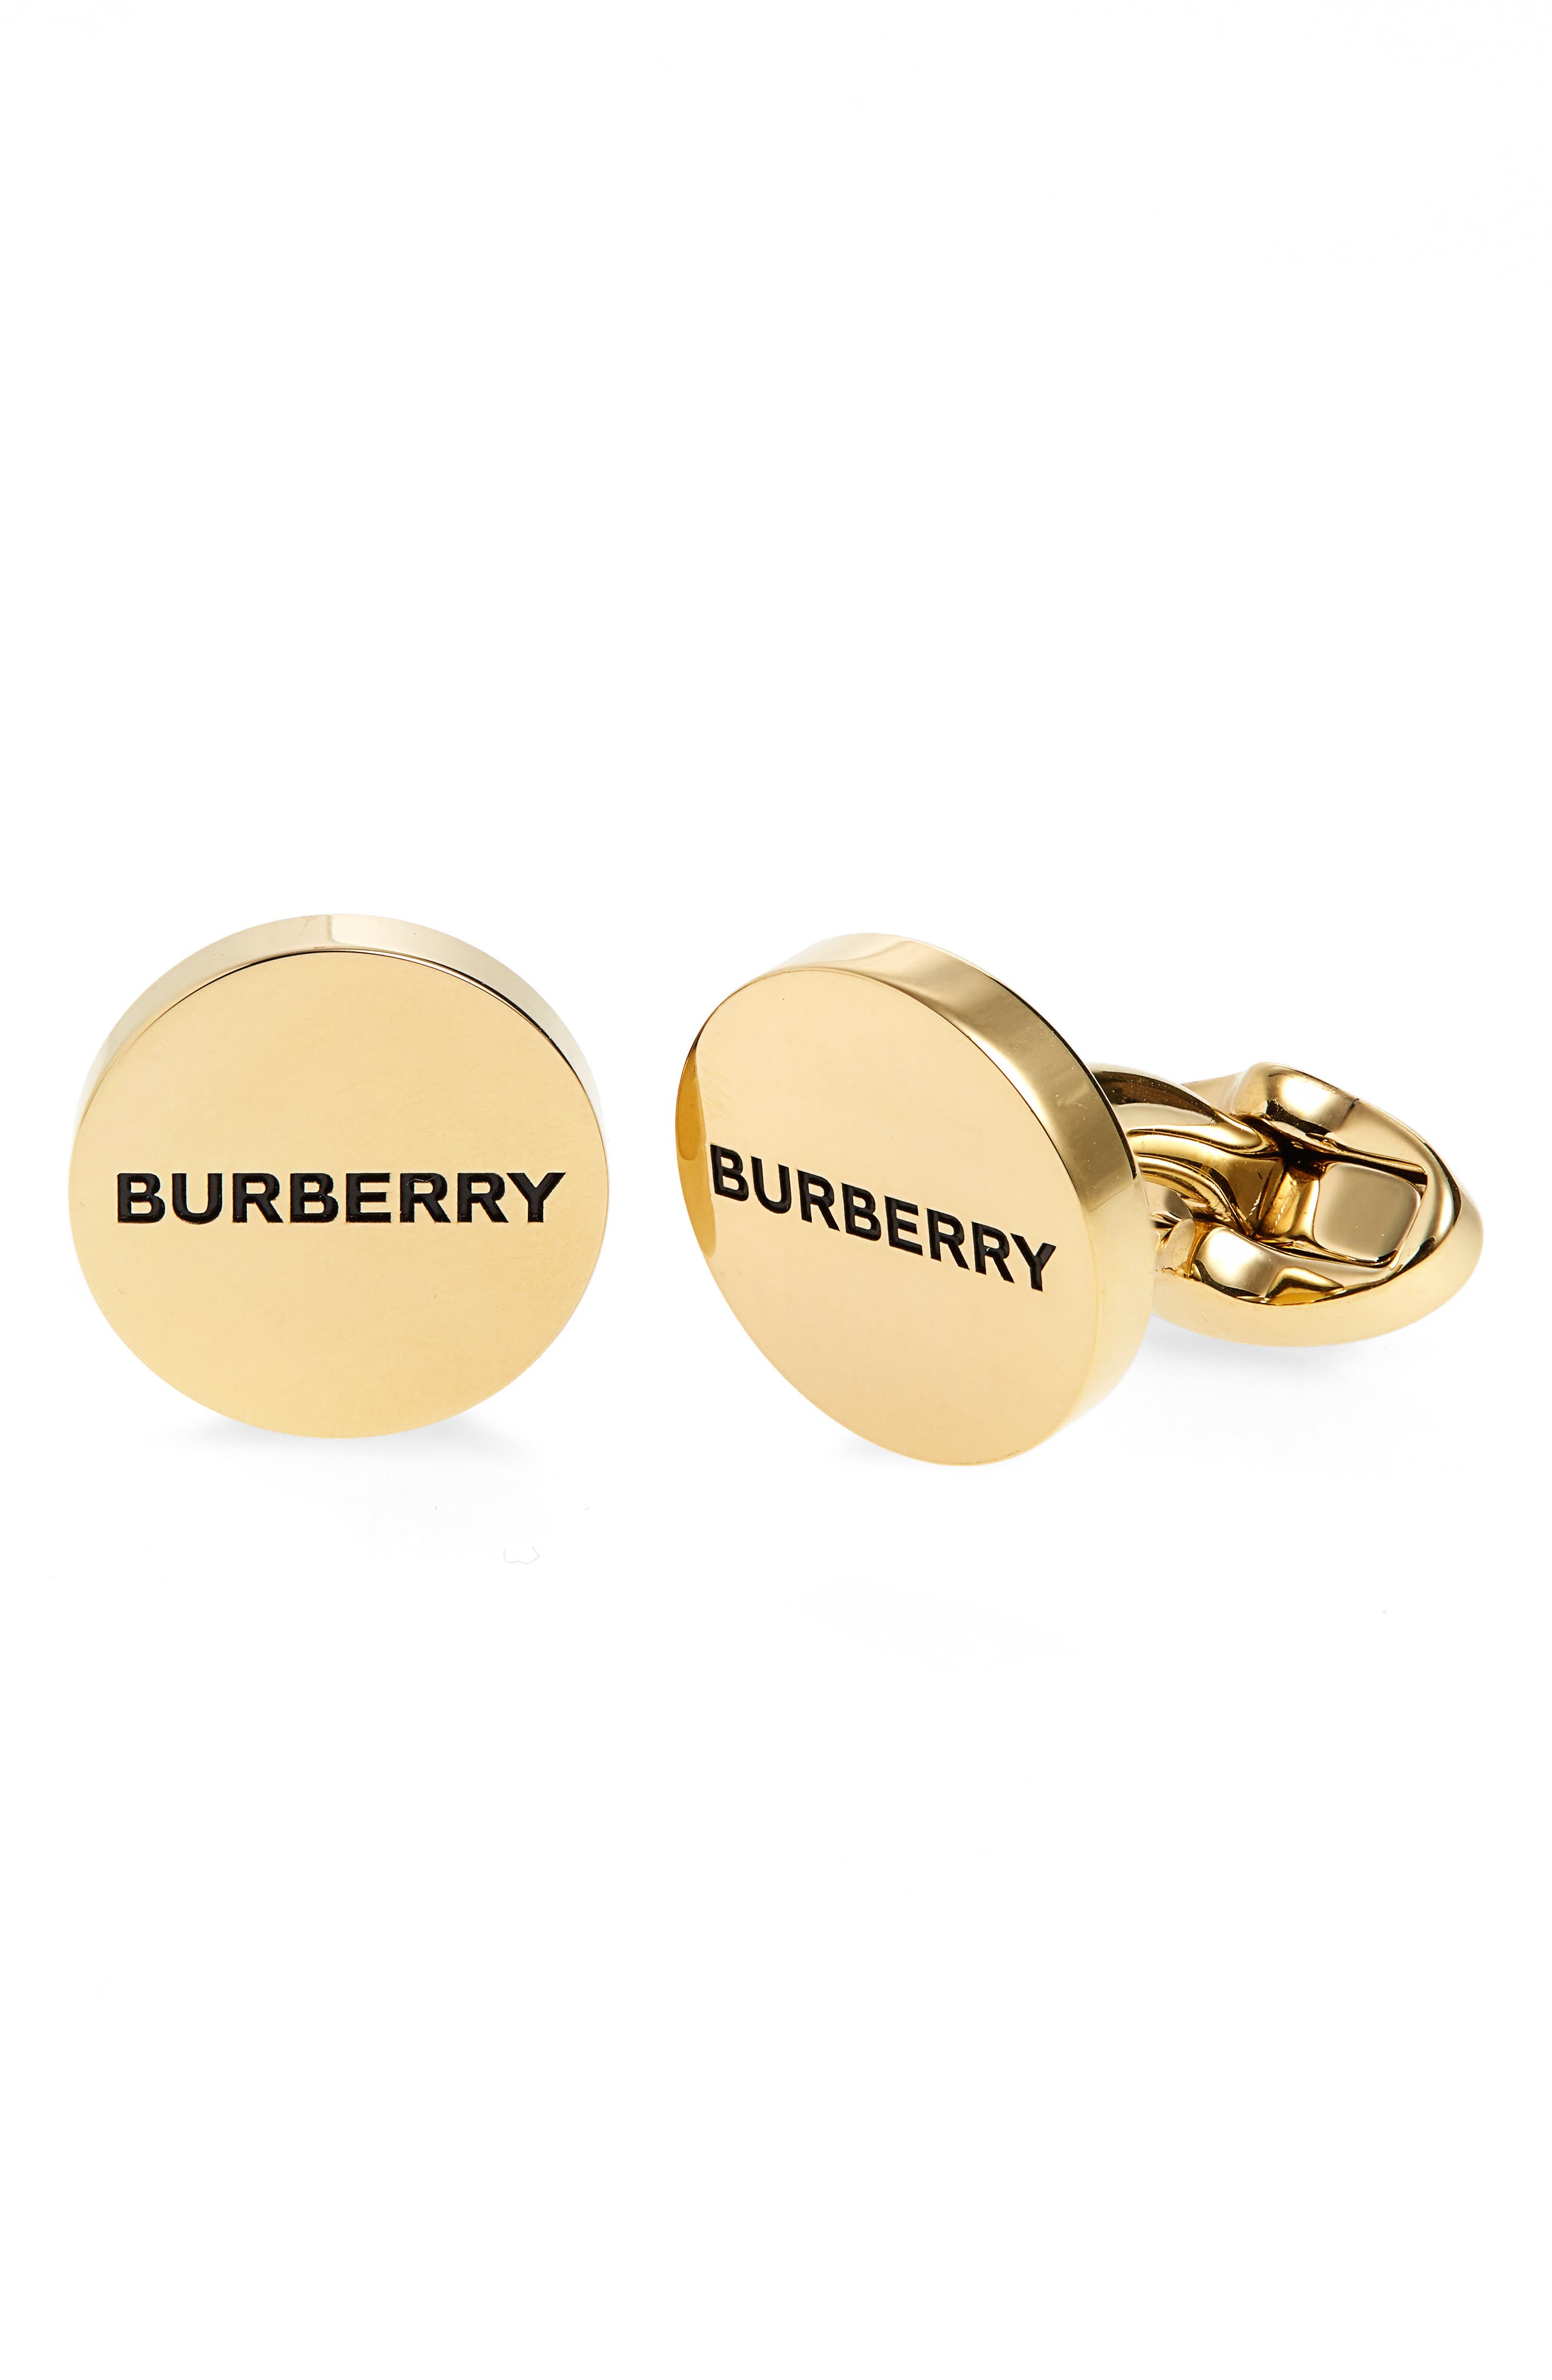 burberry jewelry